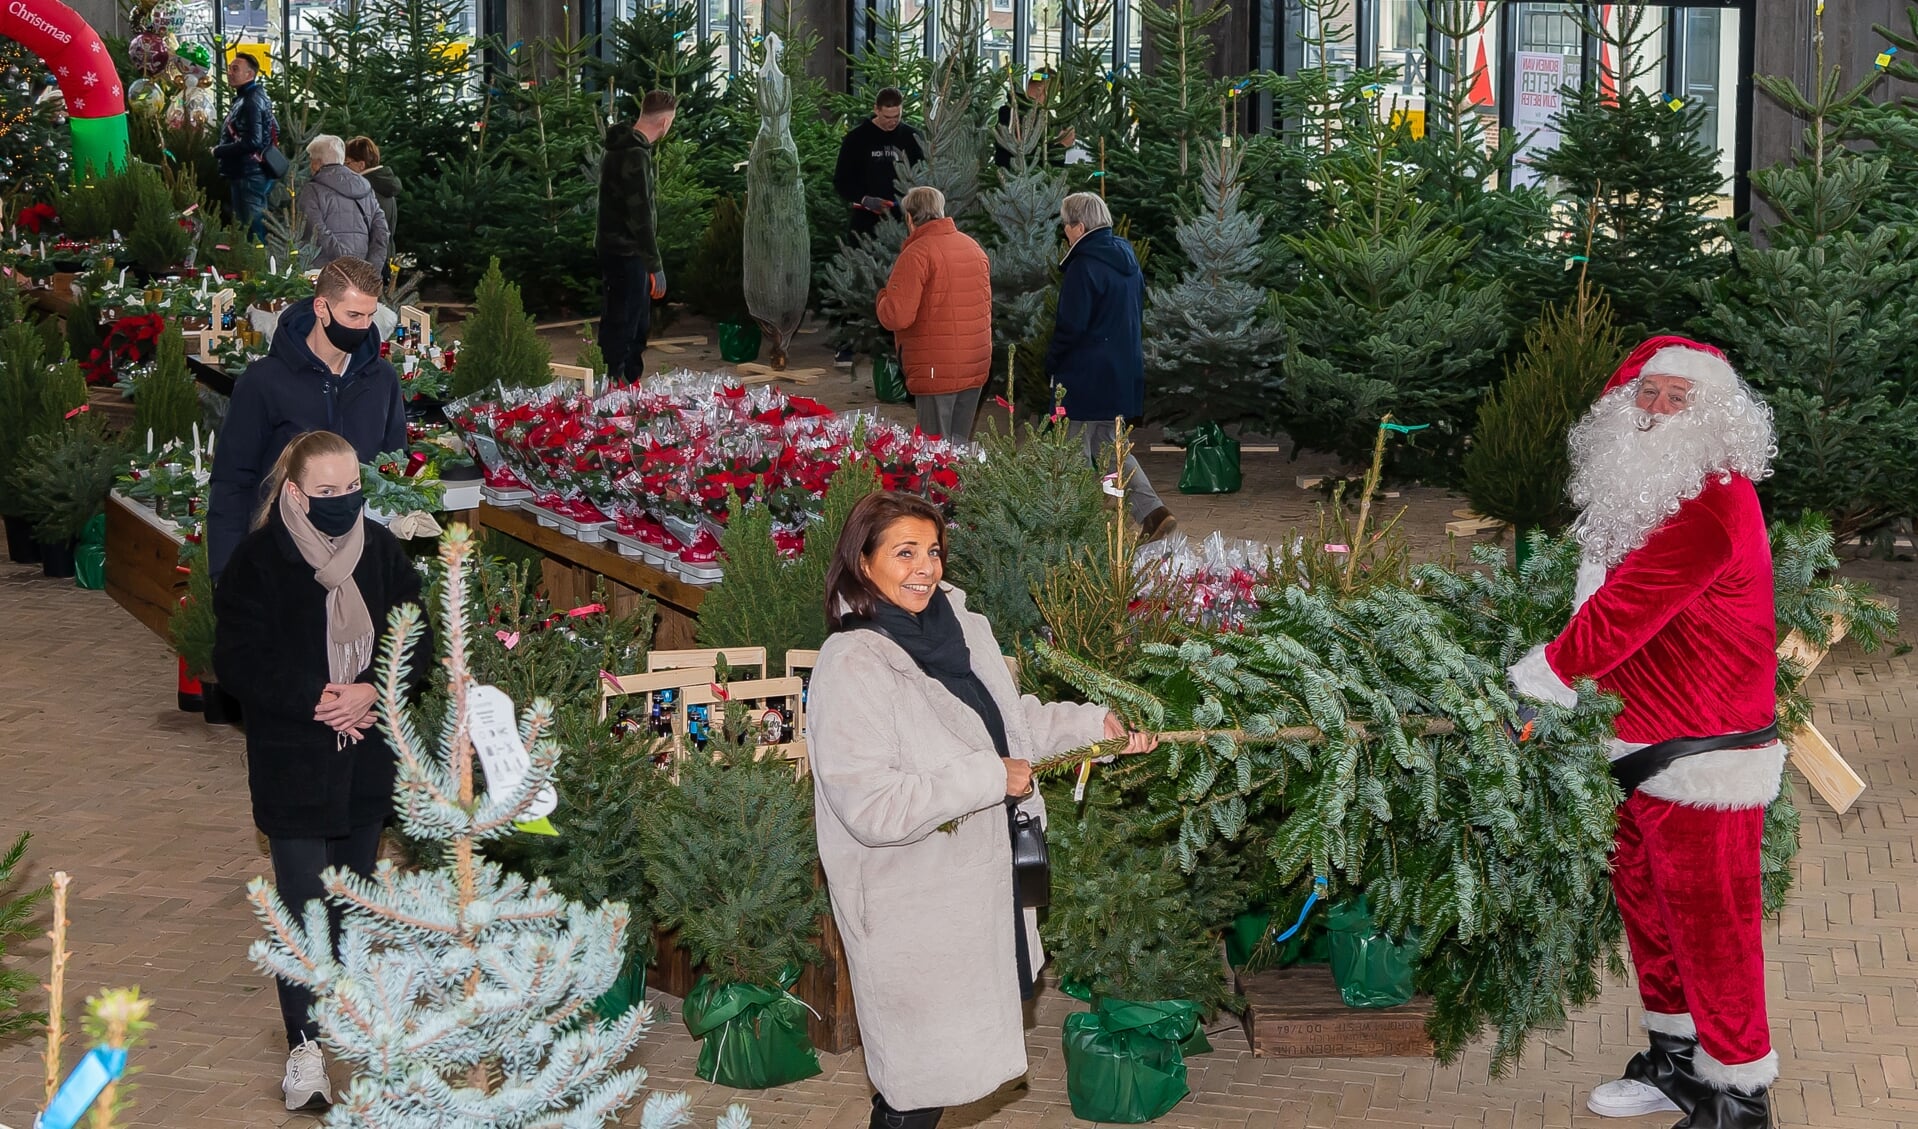 De sfeer zat er op de eerste dag goed in. Hoe lang de kerstmarkt blijft hangt af van de snelheid van de verkoop van kerstbomen. 